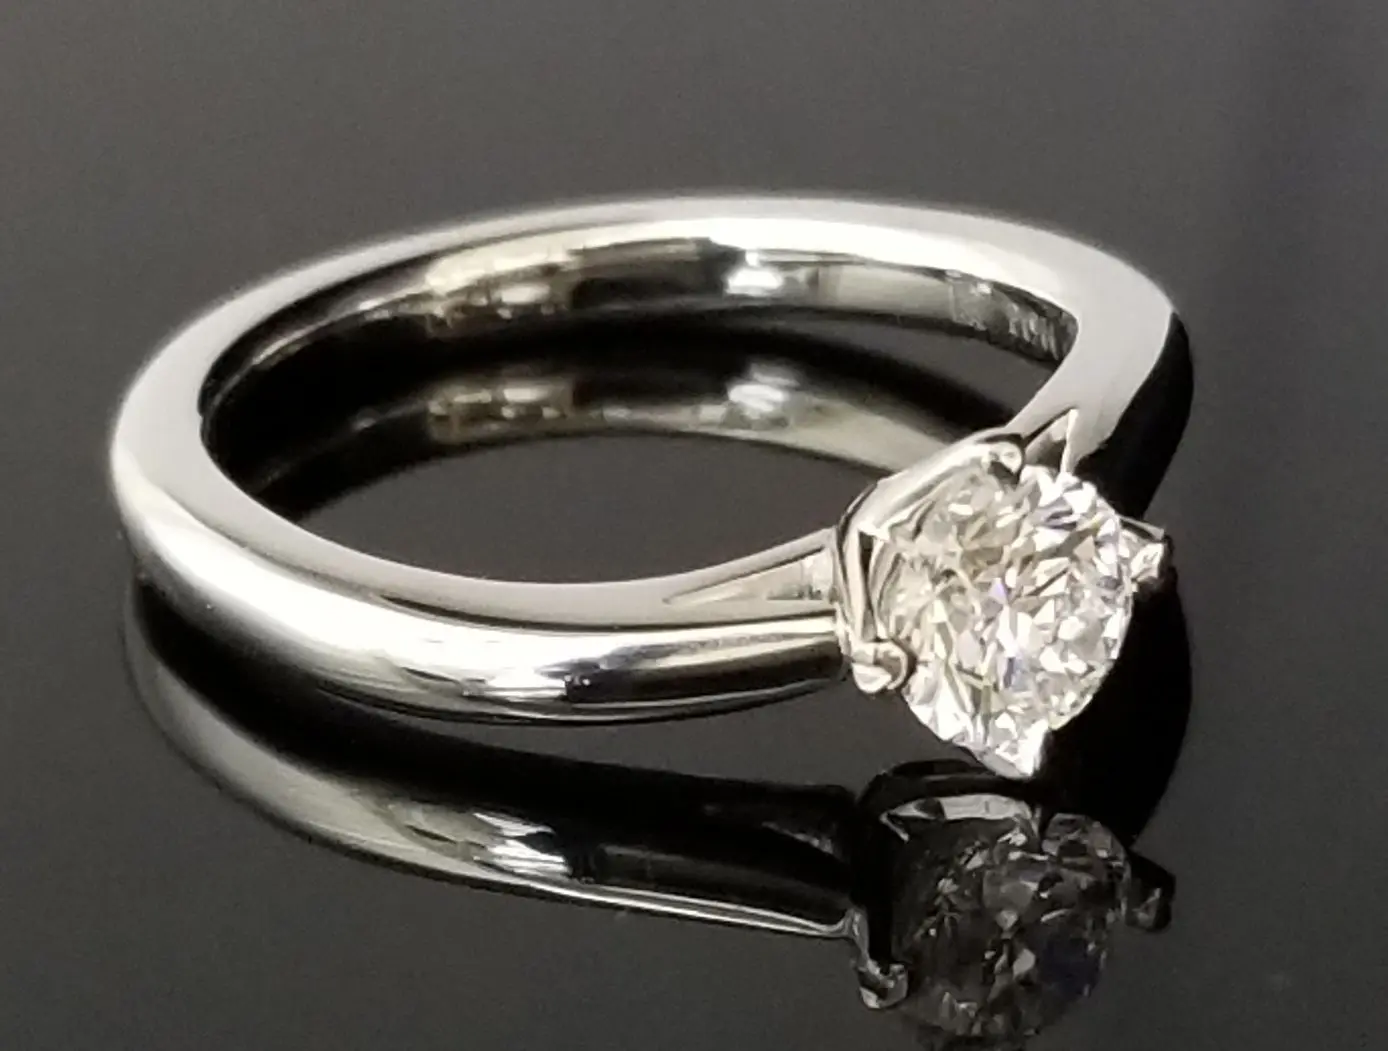 鍛造製法オーダーメイドのご婚約指輪 | 結婚・婚約指輪のオーダー 